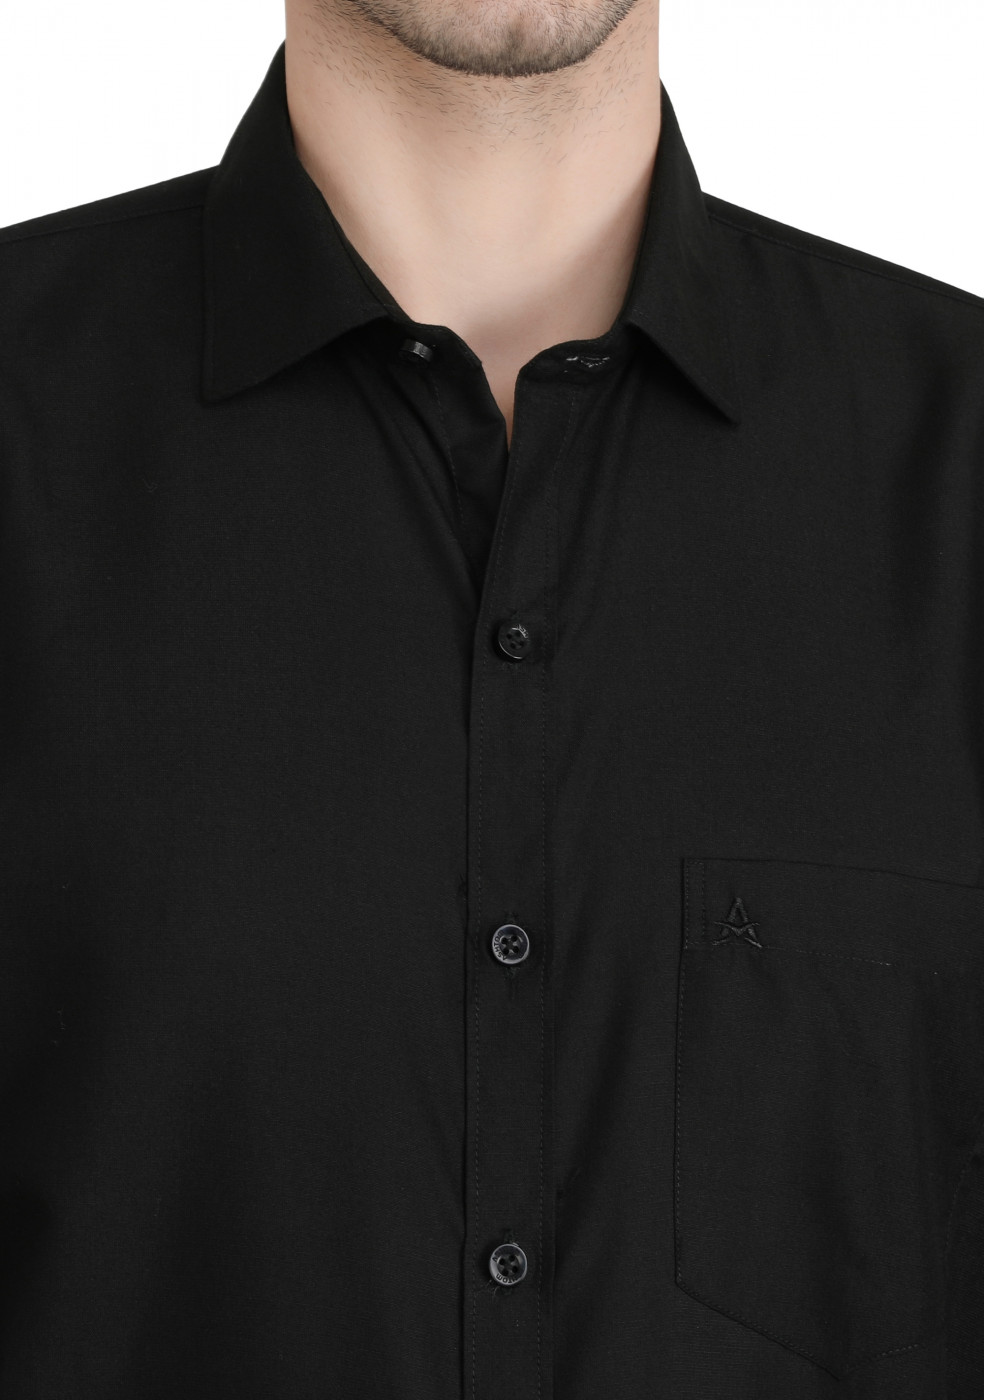 Black Plain PC Mix Cotton Shirt For Men